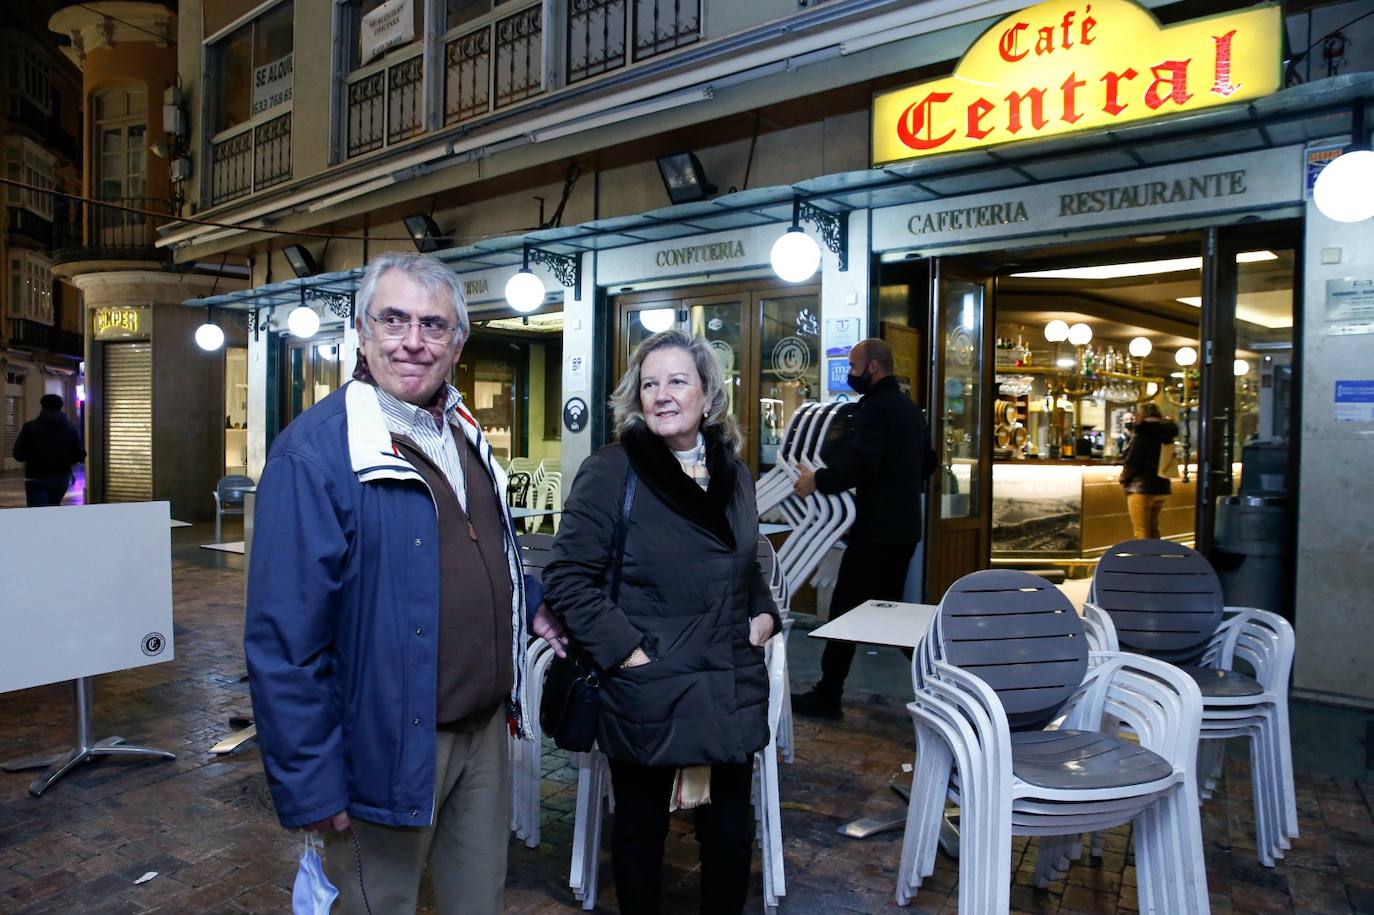 El Café Central de Málaga echó este domingo el cierre tras un siglo de historia. 